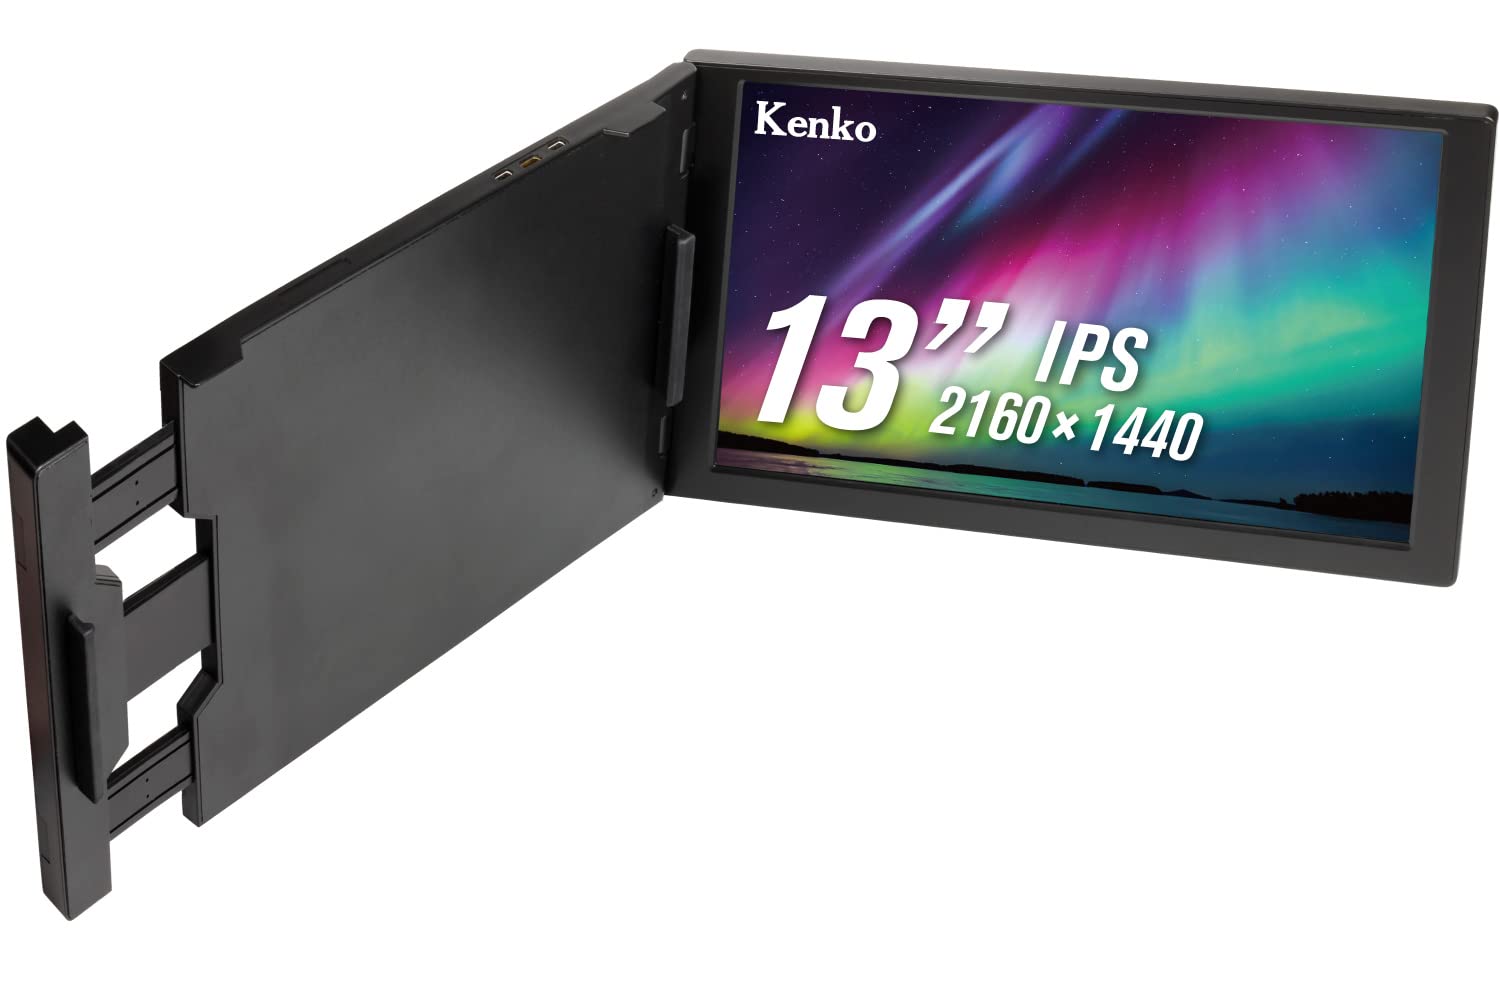 Kenko モバイルモニター KZ-13MT 13インチ 2160×1440 IPSパネル 光沢タイプ ミニHDMI/USB Type-C入力 ノートPC取り付け可能 005484 ブラック